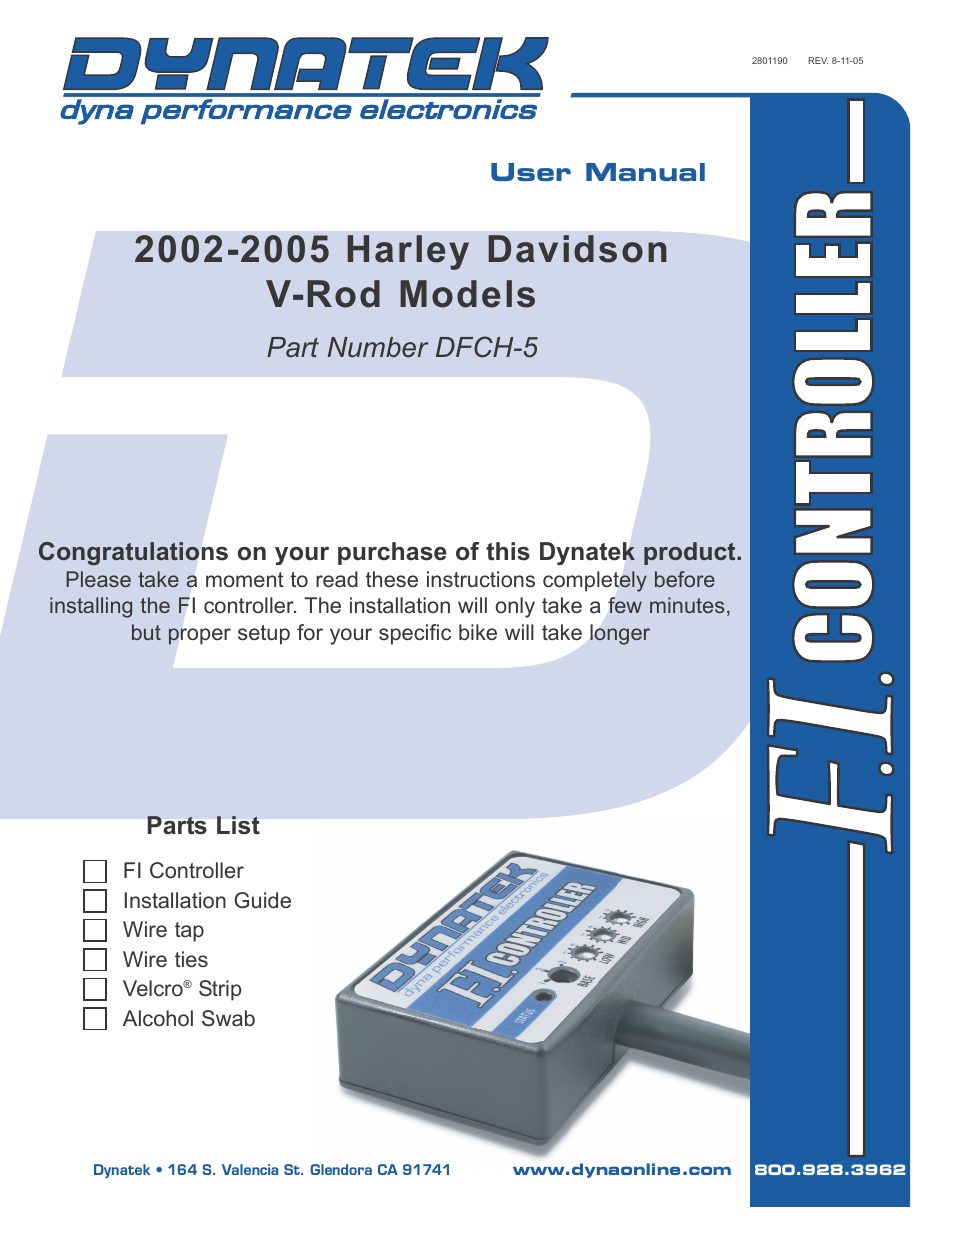 2002-2005 Harley Davidson V-Rod Models